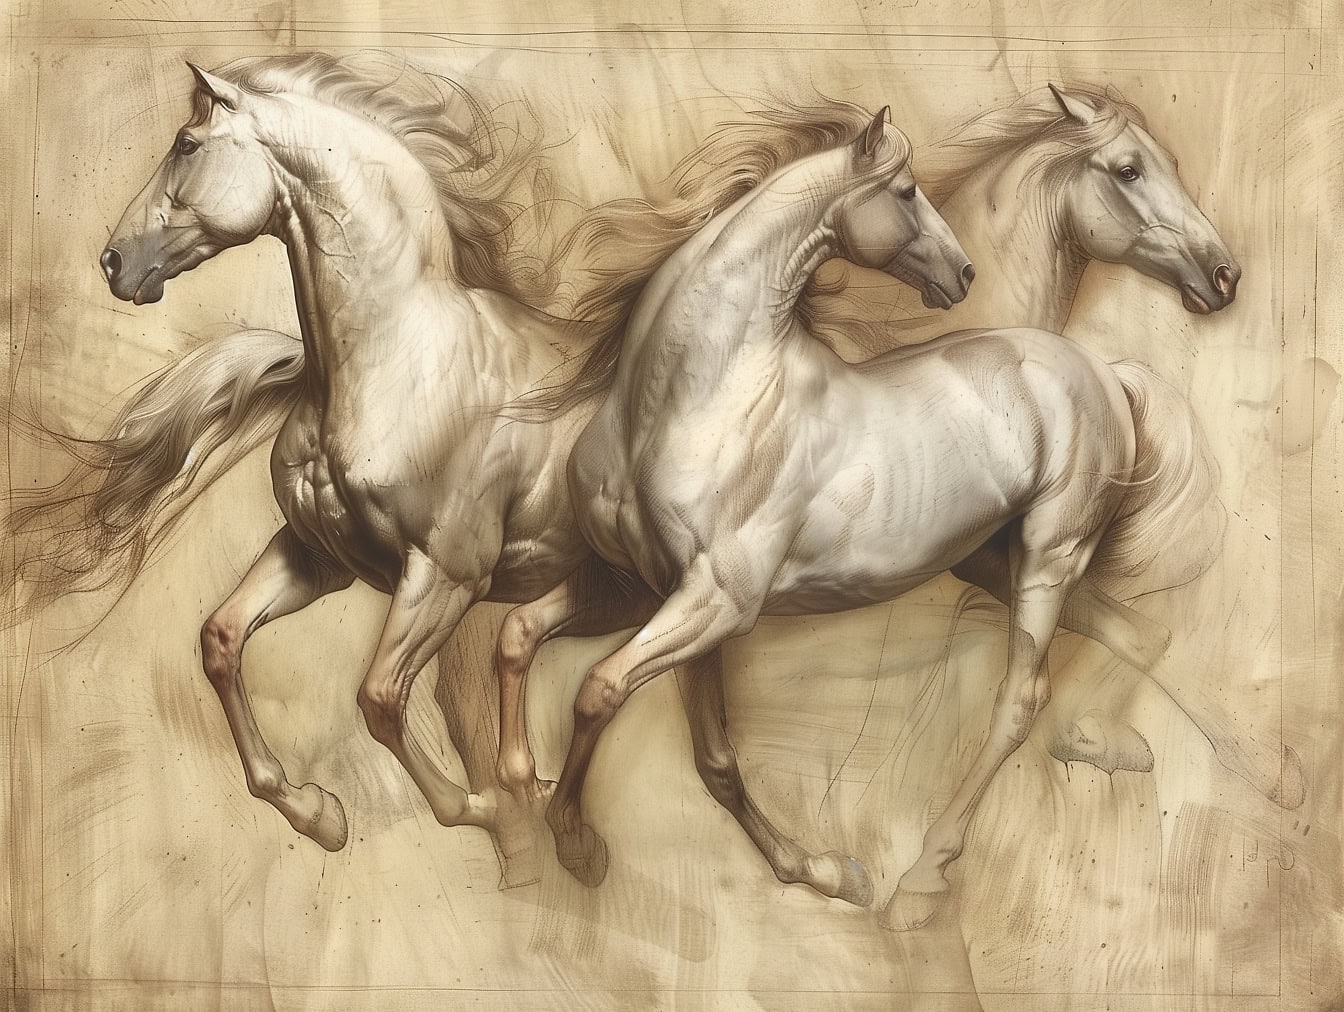 砂埃の中を走る3頭の馬の絵